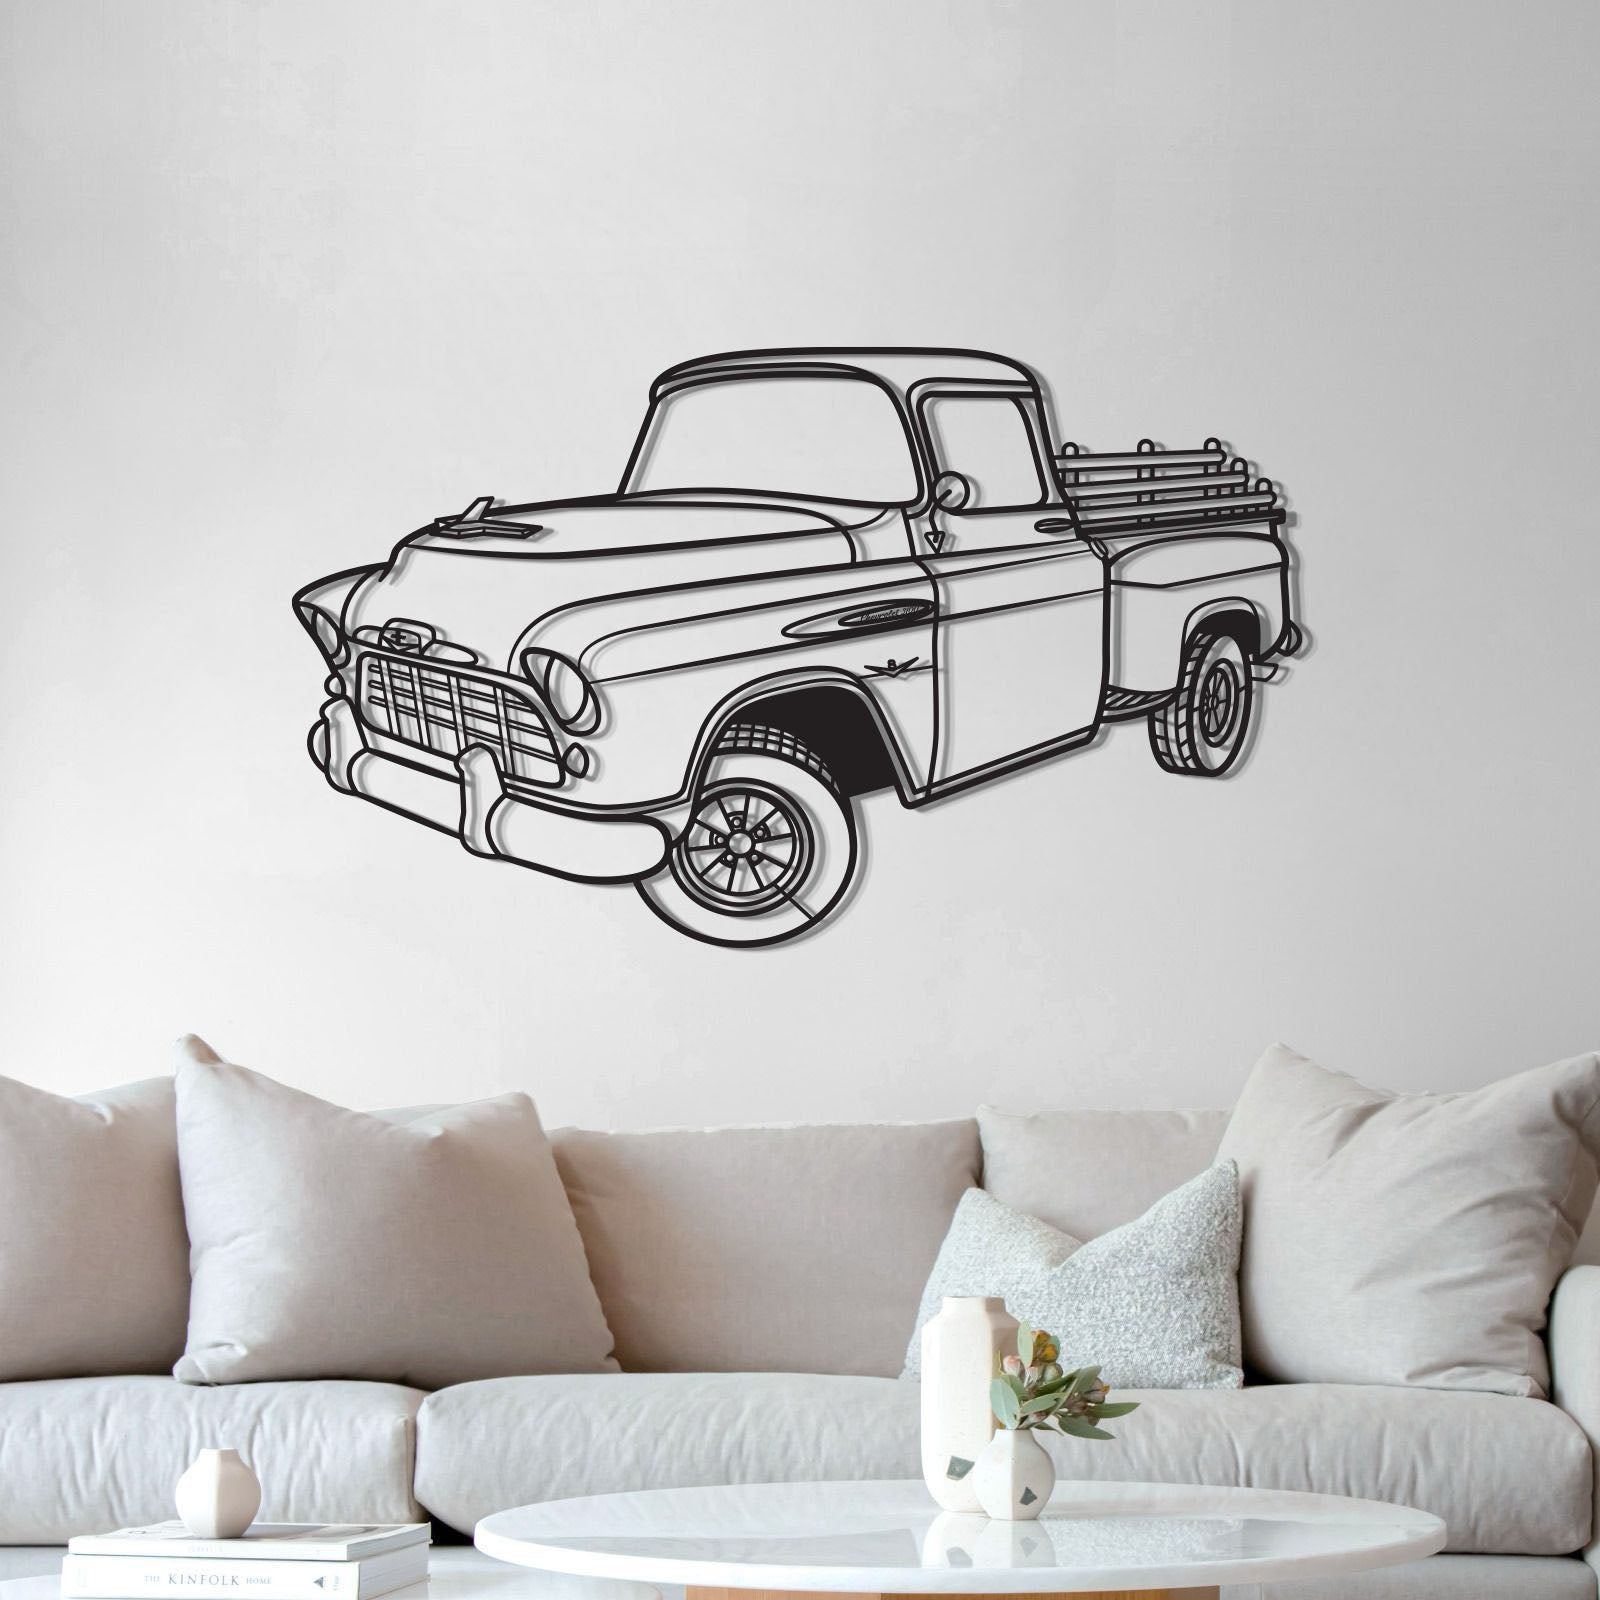 1958 3100 Perspective Metal Car Wall Art - MT1295